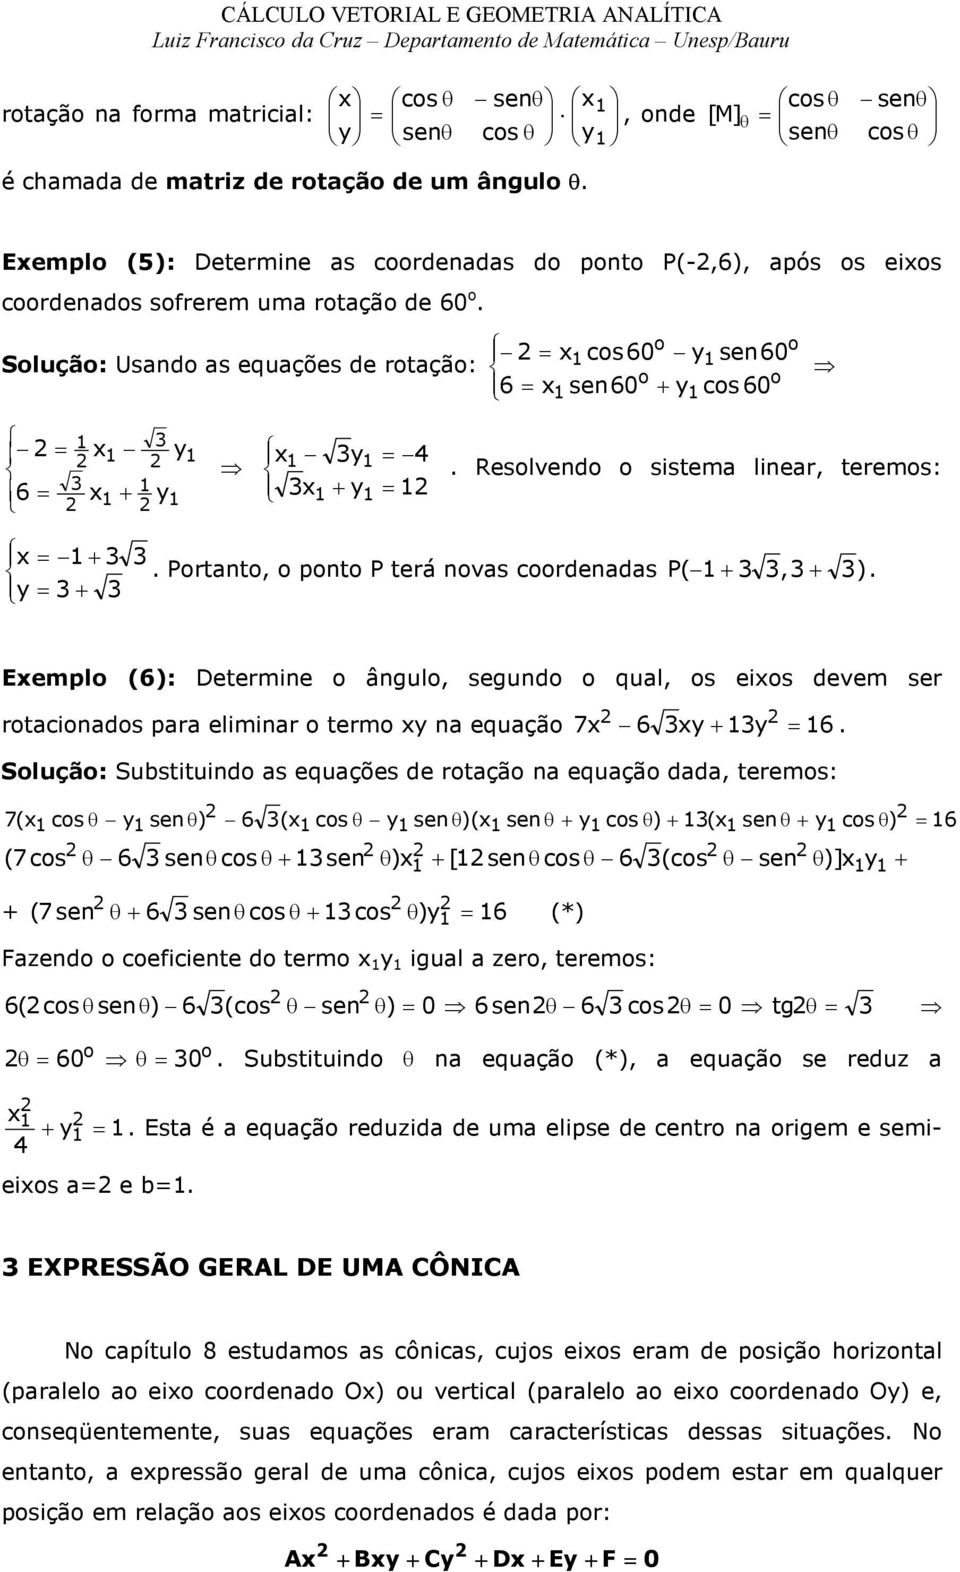 Eempl (6): Determine ângul, segund qual, s eis devem ser rtacinads para eliminar term na equaçã 7 6 6.